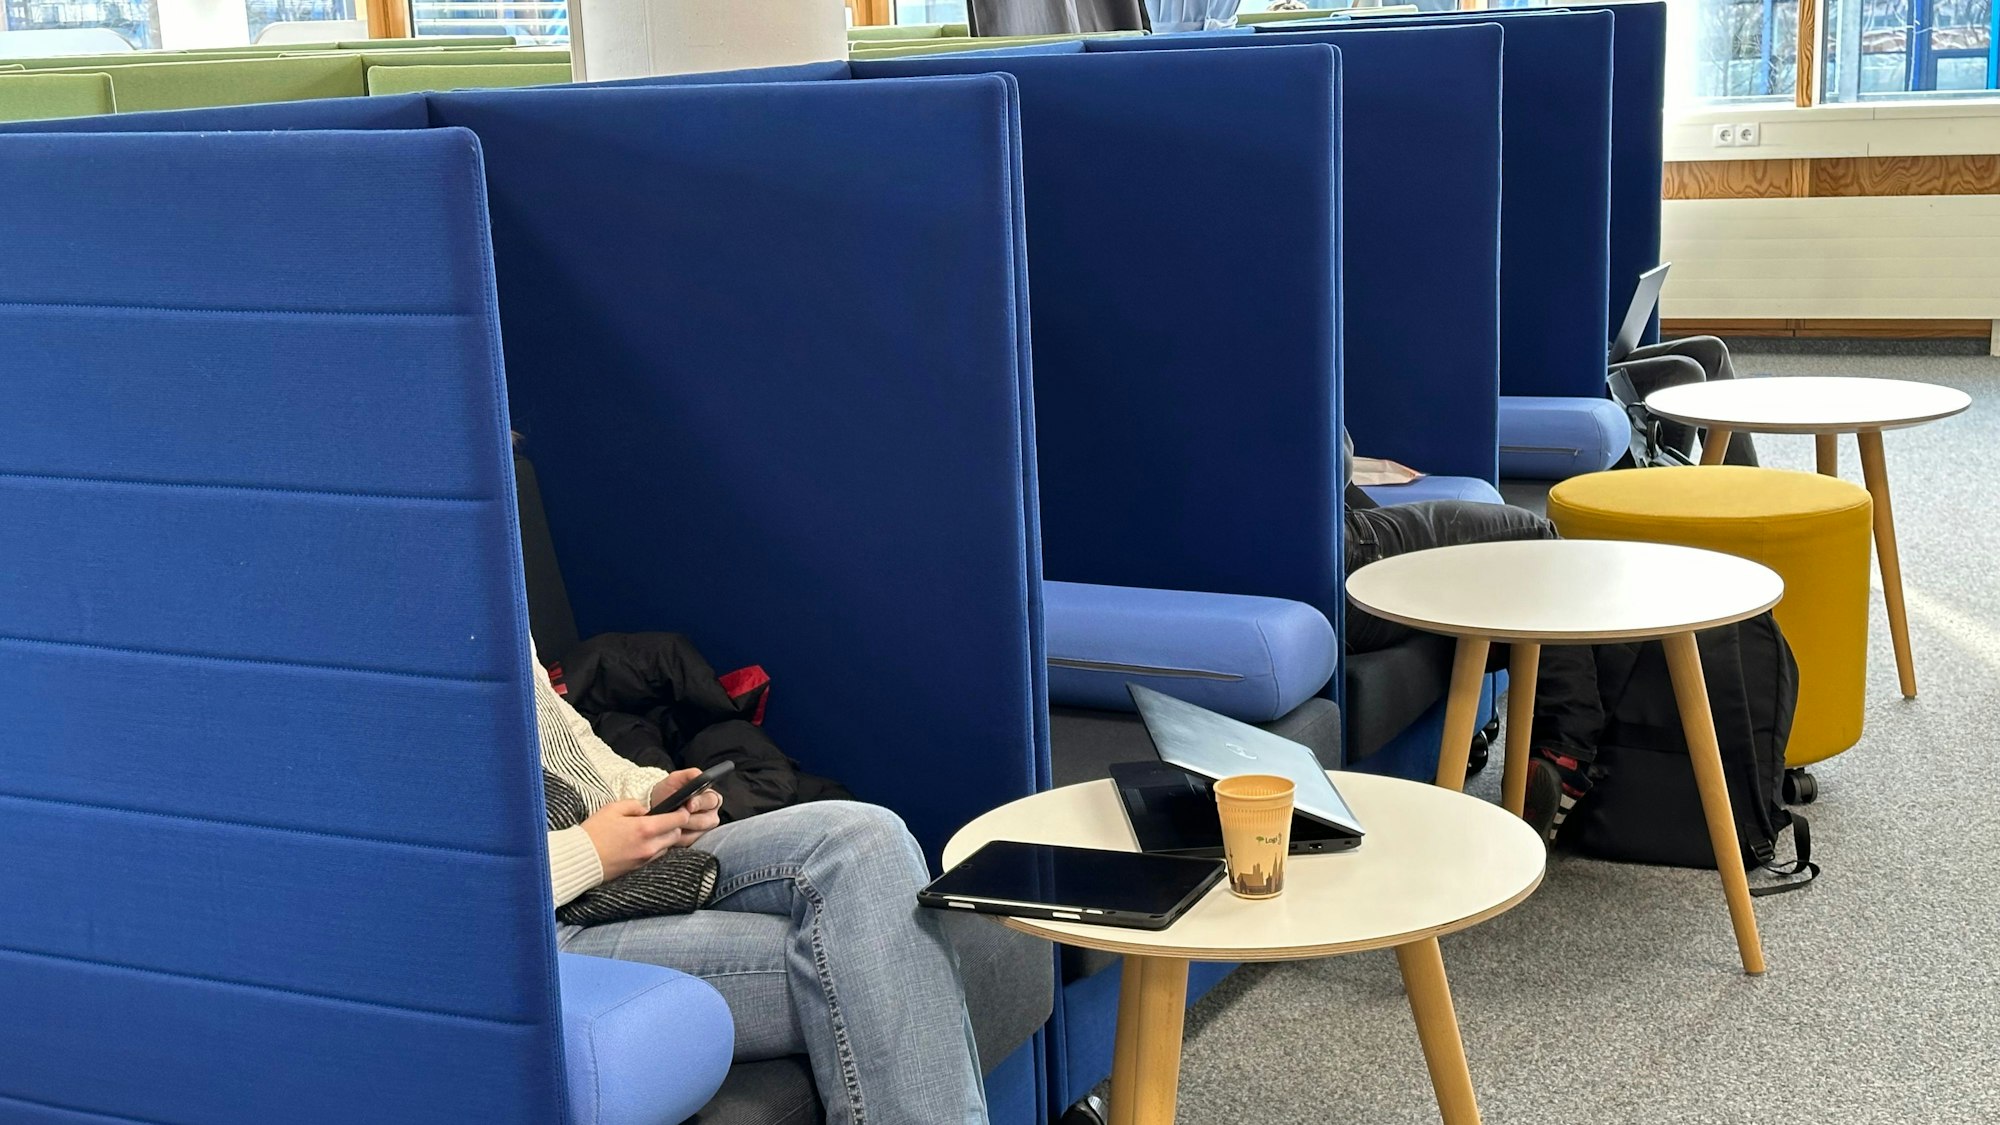 In der Bibliothek der Hochschule Bonn-Rhein-Siegburg sollen sich die Studierenden wohlfühlen. Dazu gehören auch Lese-Sessel, die Privatsphäre ermöglichen. Sie haben fast zwei Meter hohe Seitenteile und bilden so eine Art Kabine.